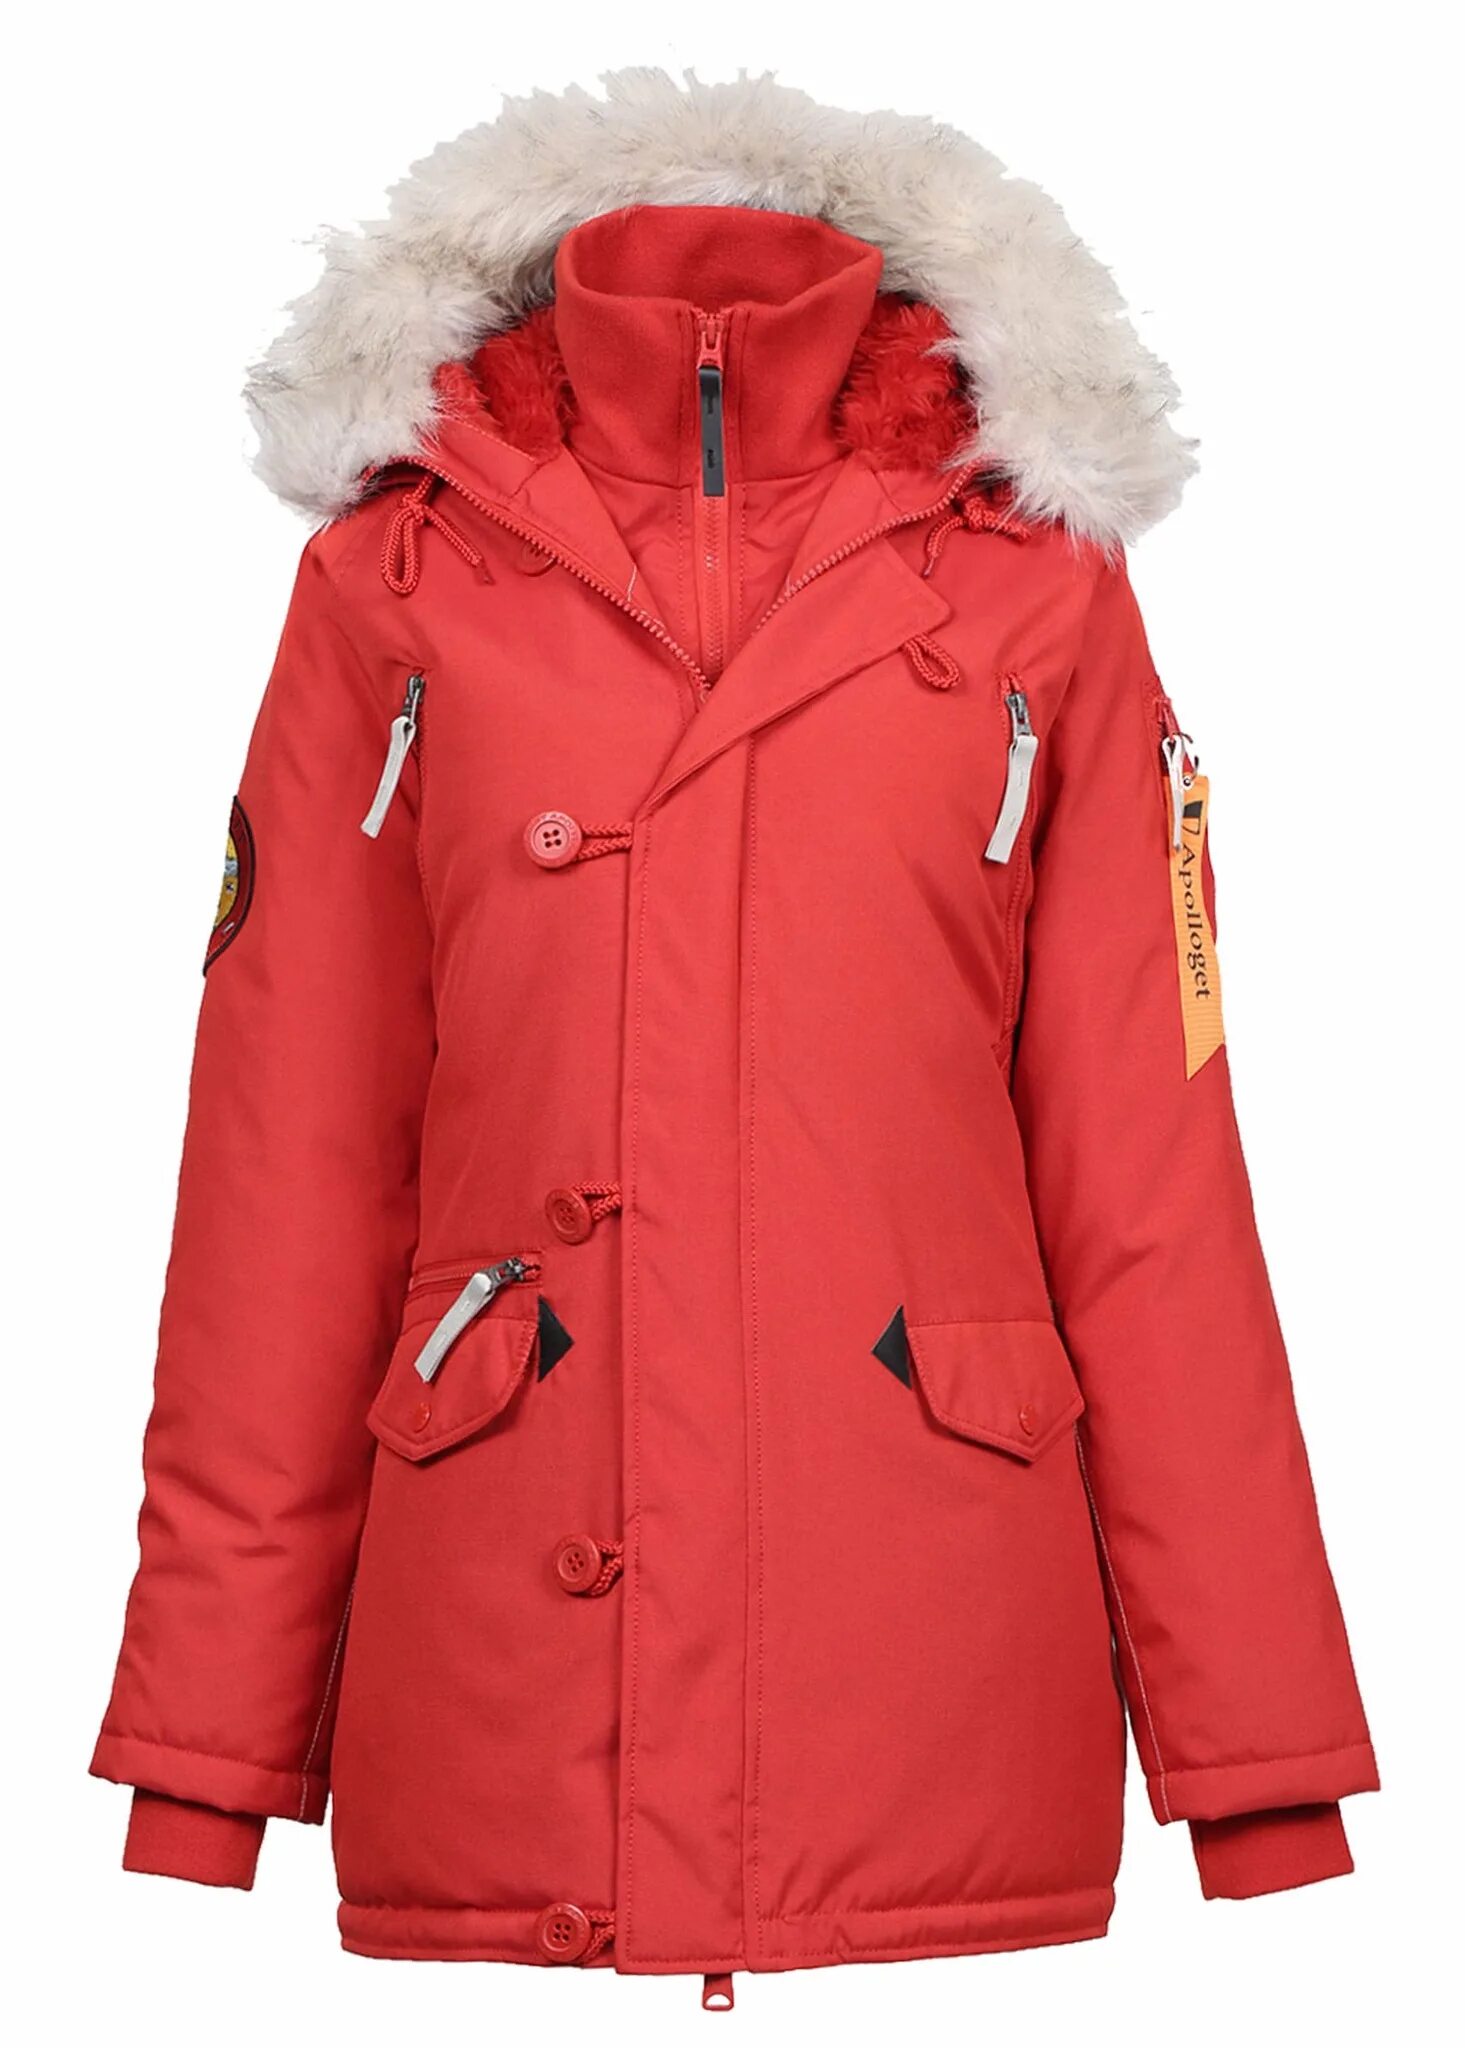 Фирма курток аляска. Куртка Аляска женская. Куртка Аляска женская зимняя. Парка Аляска женская зимняя. Куртка Alyeska женская зимняя.